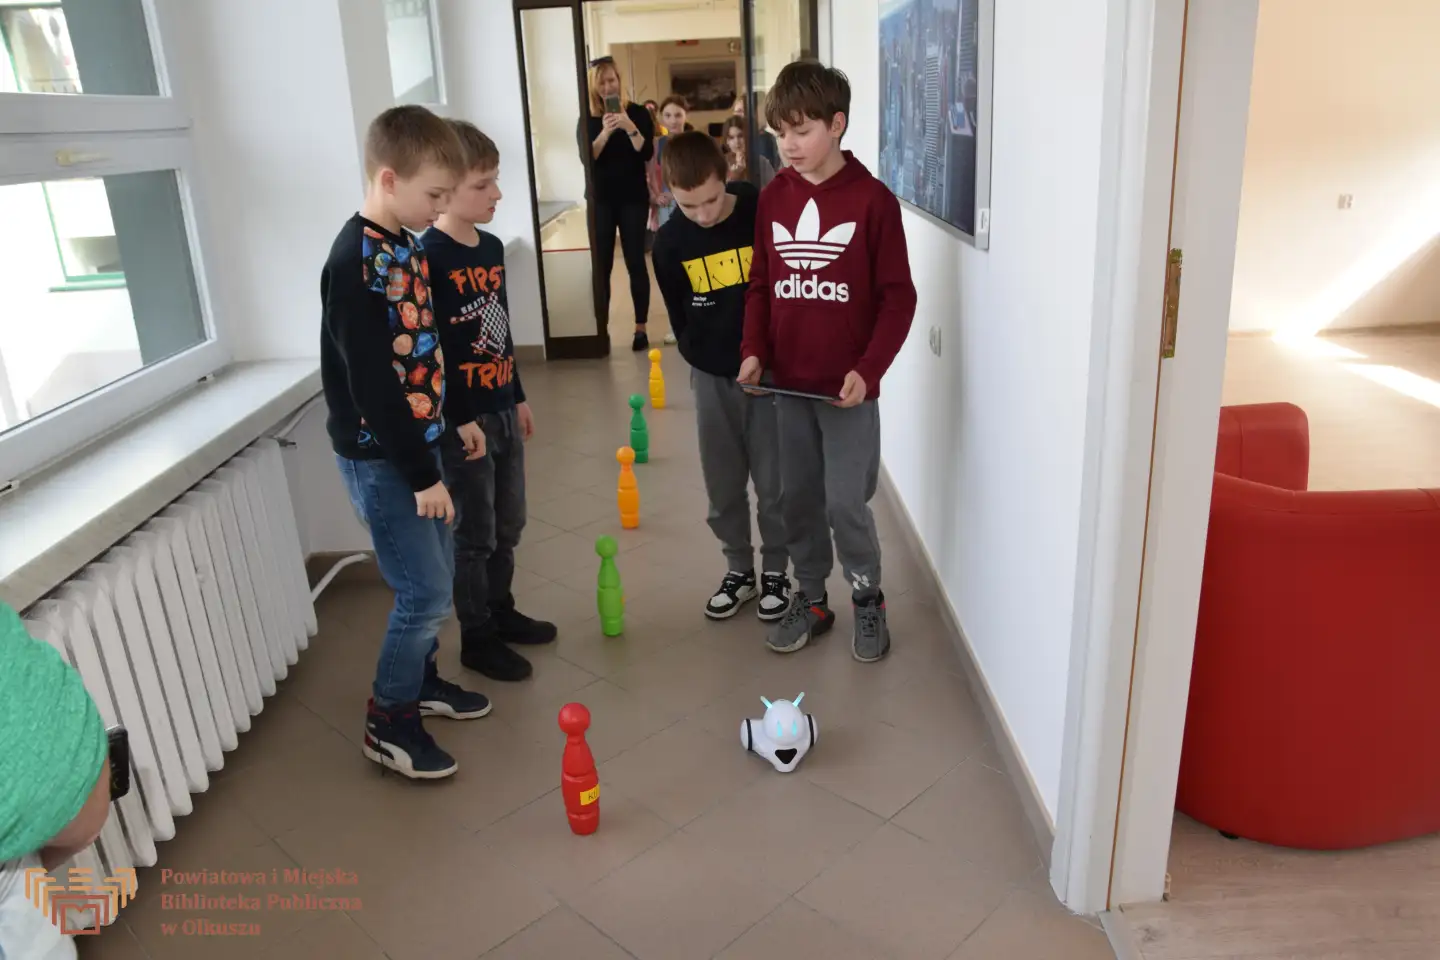 Grupa chłopców stoi w korytarzu i patrzy na robota, który jedzie koło pionów do kręgli ułożonych wzdłuż linii.